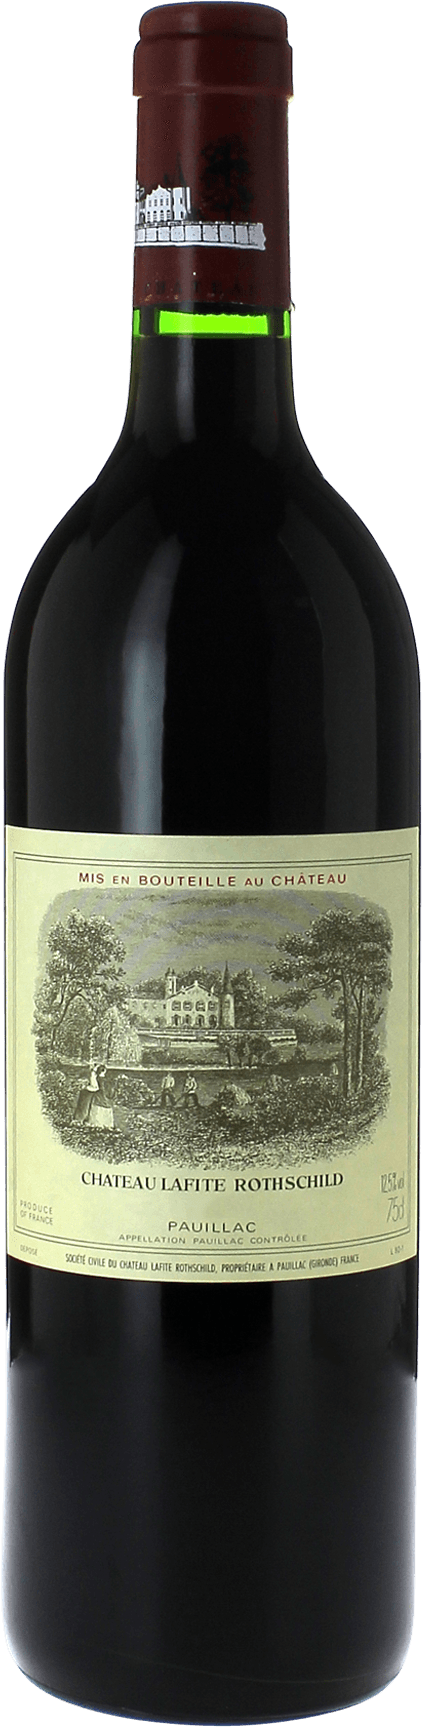 Lafite rothschild 2015 1er Grand cru class Pauillac, Bordeaux rouge